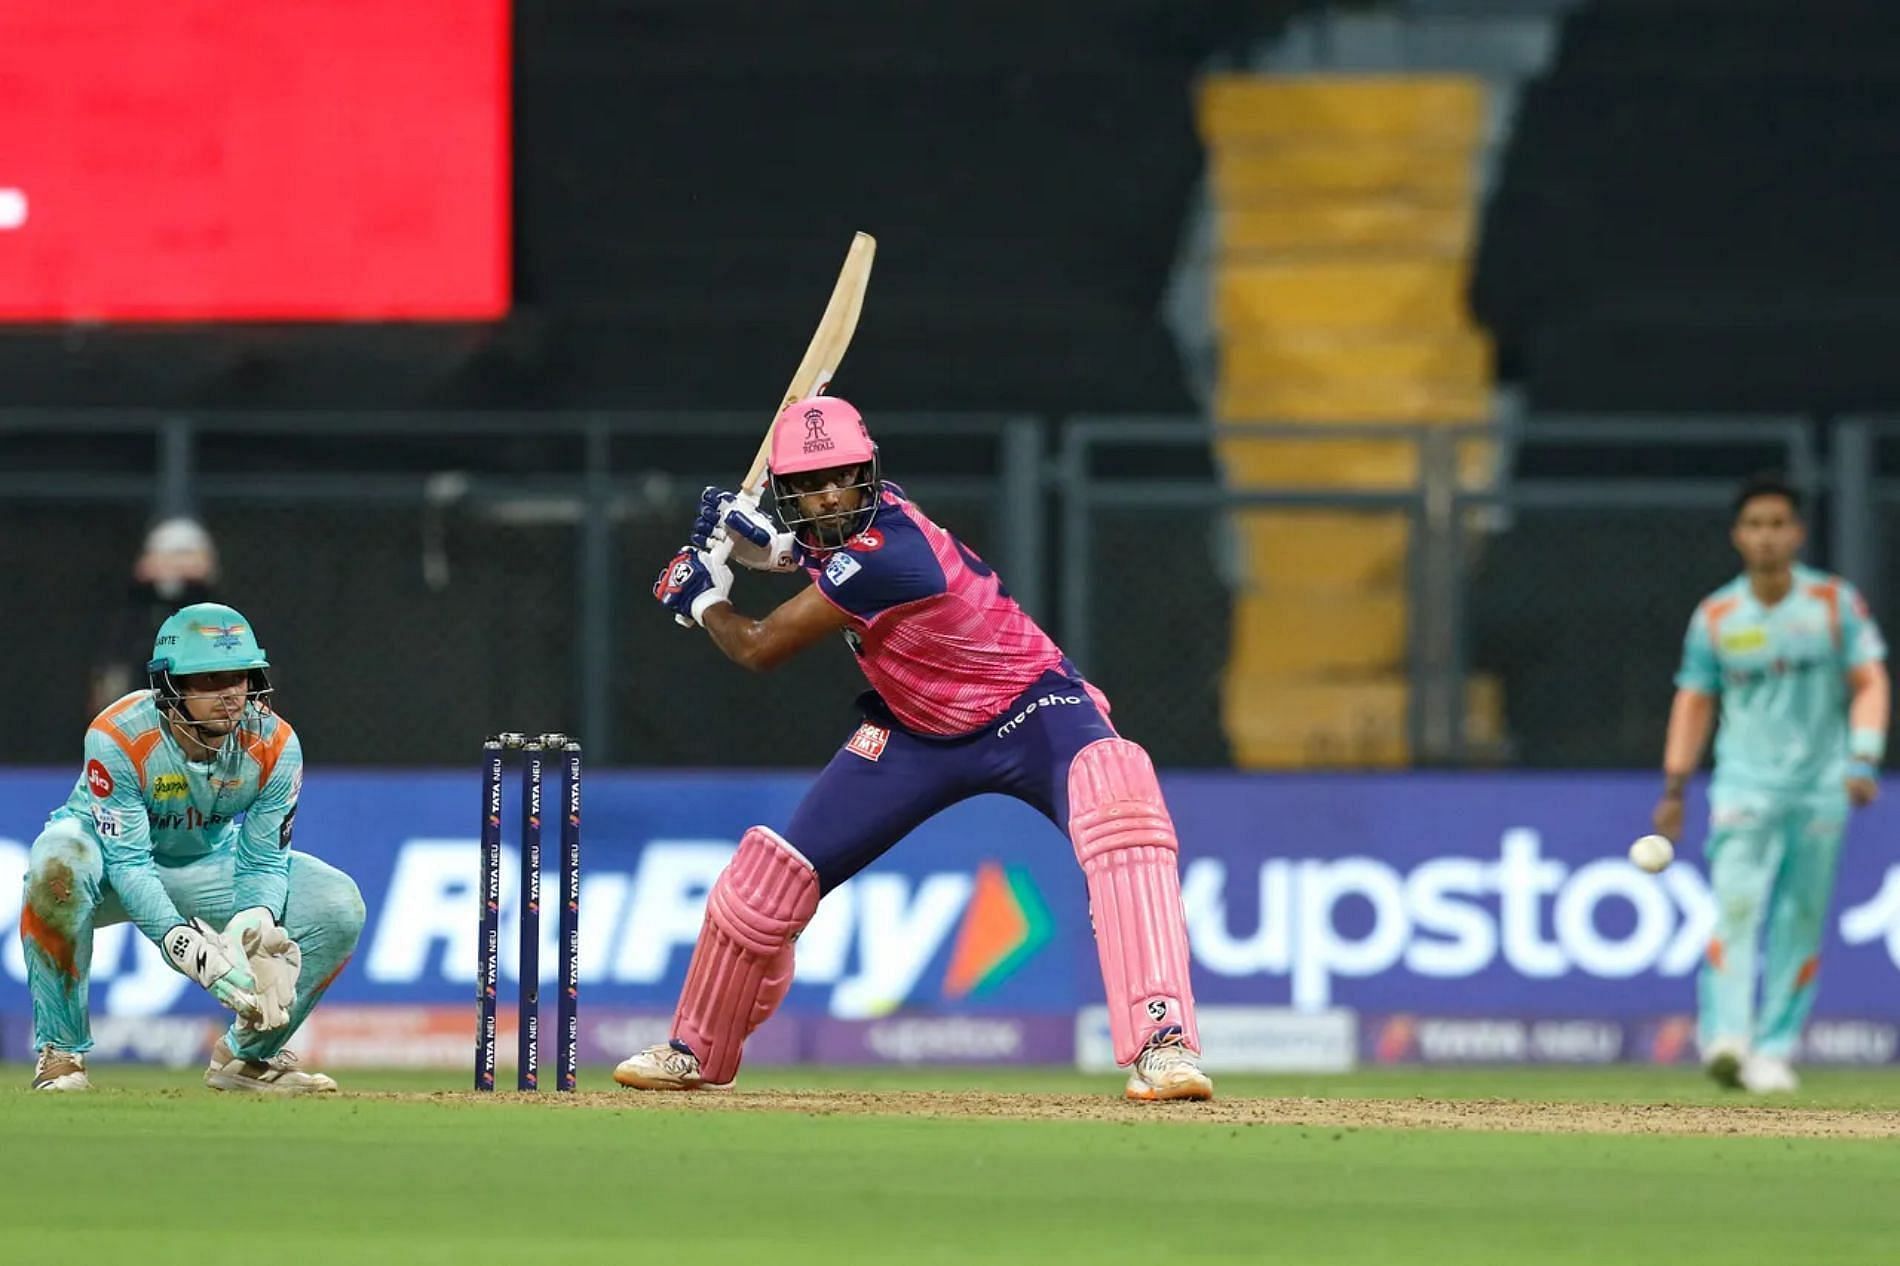 रविचंद्रन अश्विन लखनऊ सुपरजायंट्स के खिलाफ 23 गेंदों में 28 रन बनाकर रिटायर्ड आउट हुए थे